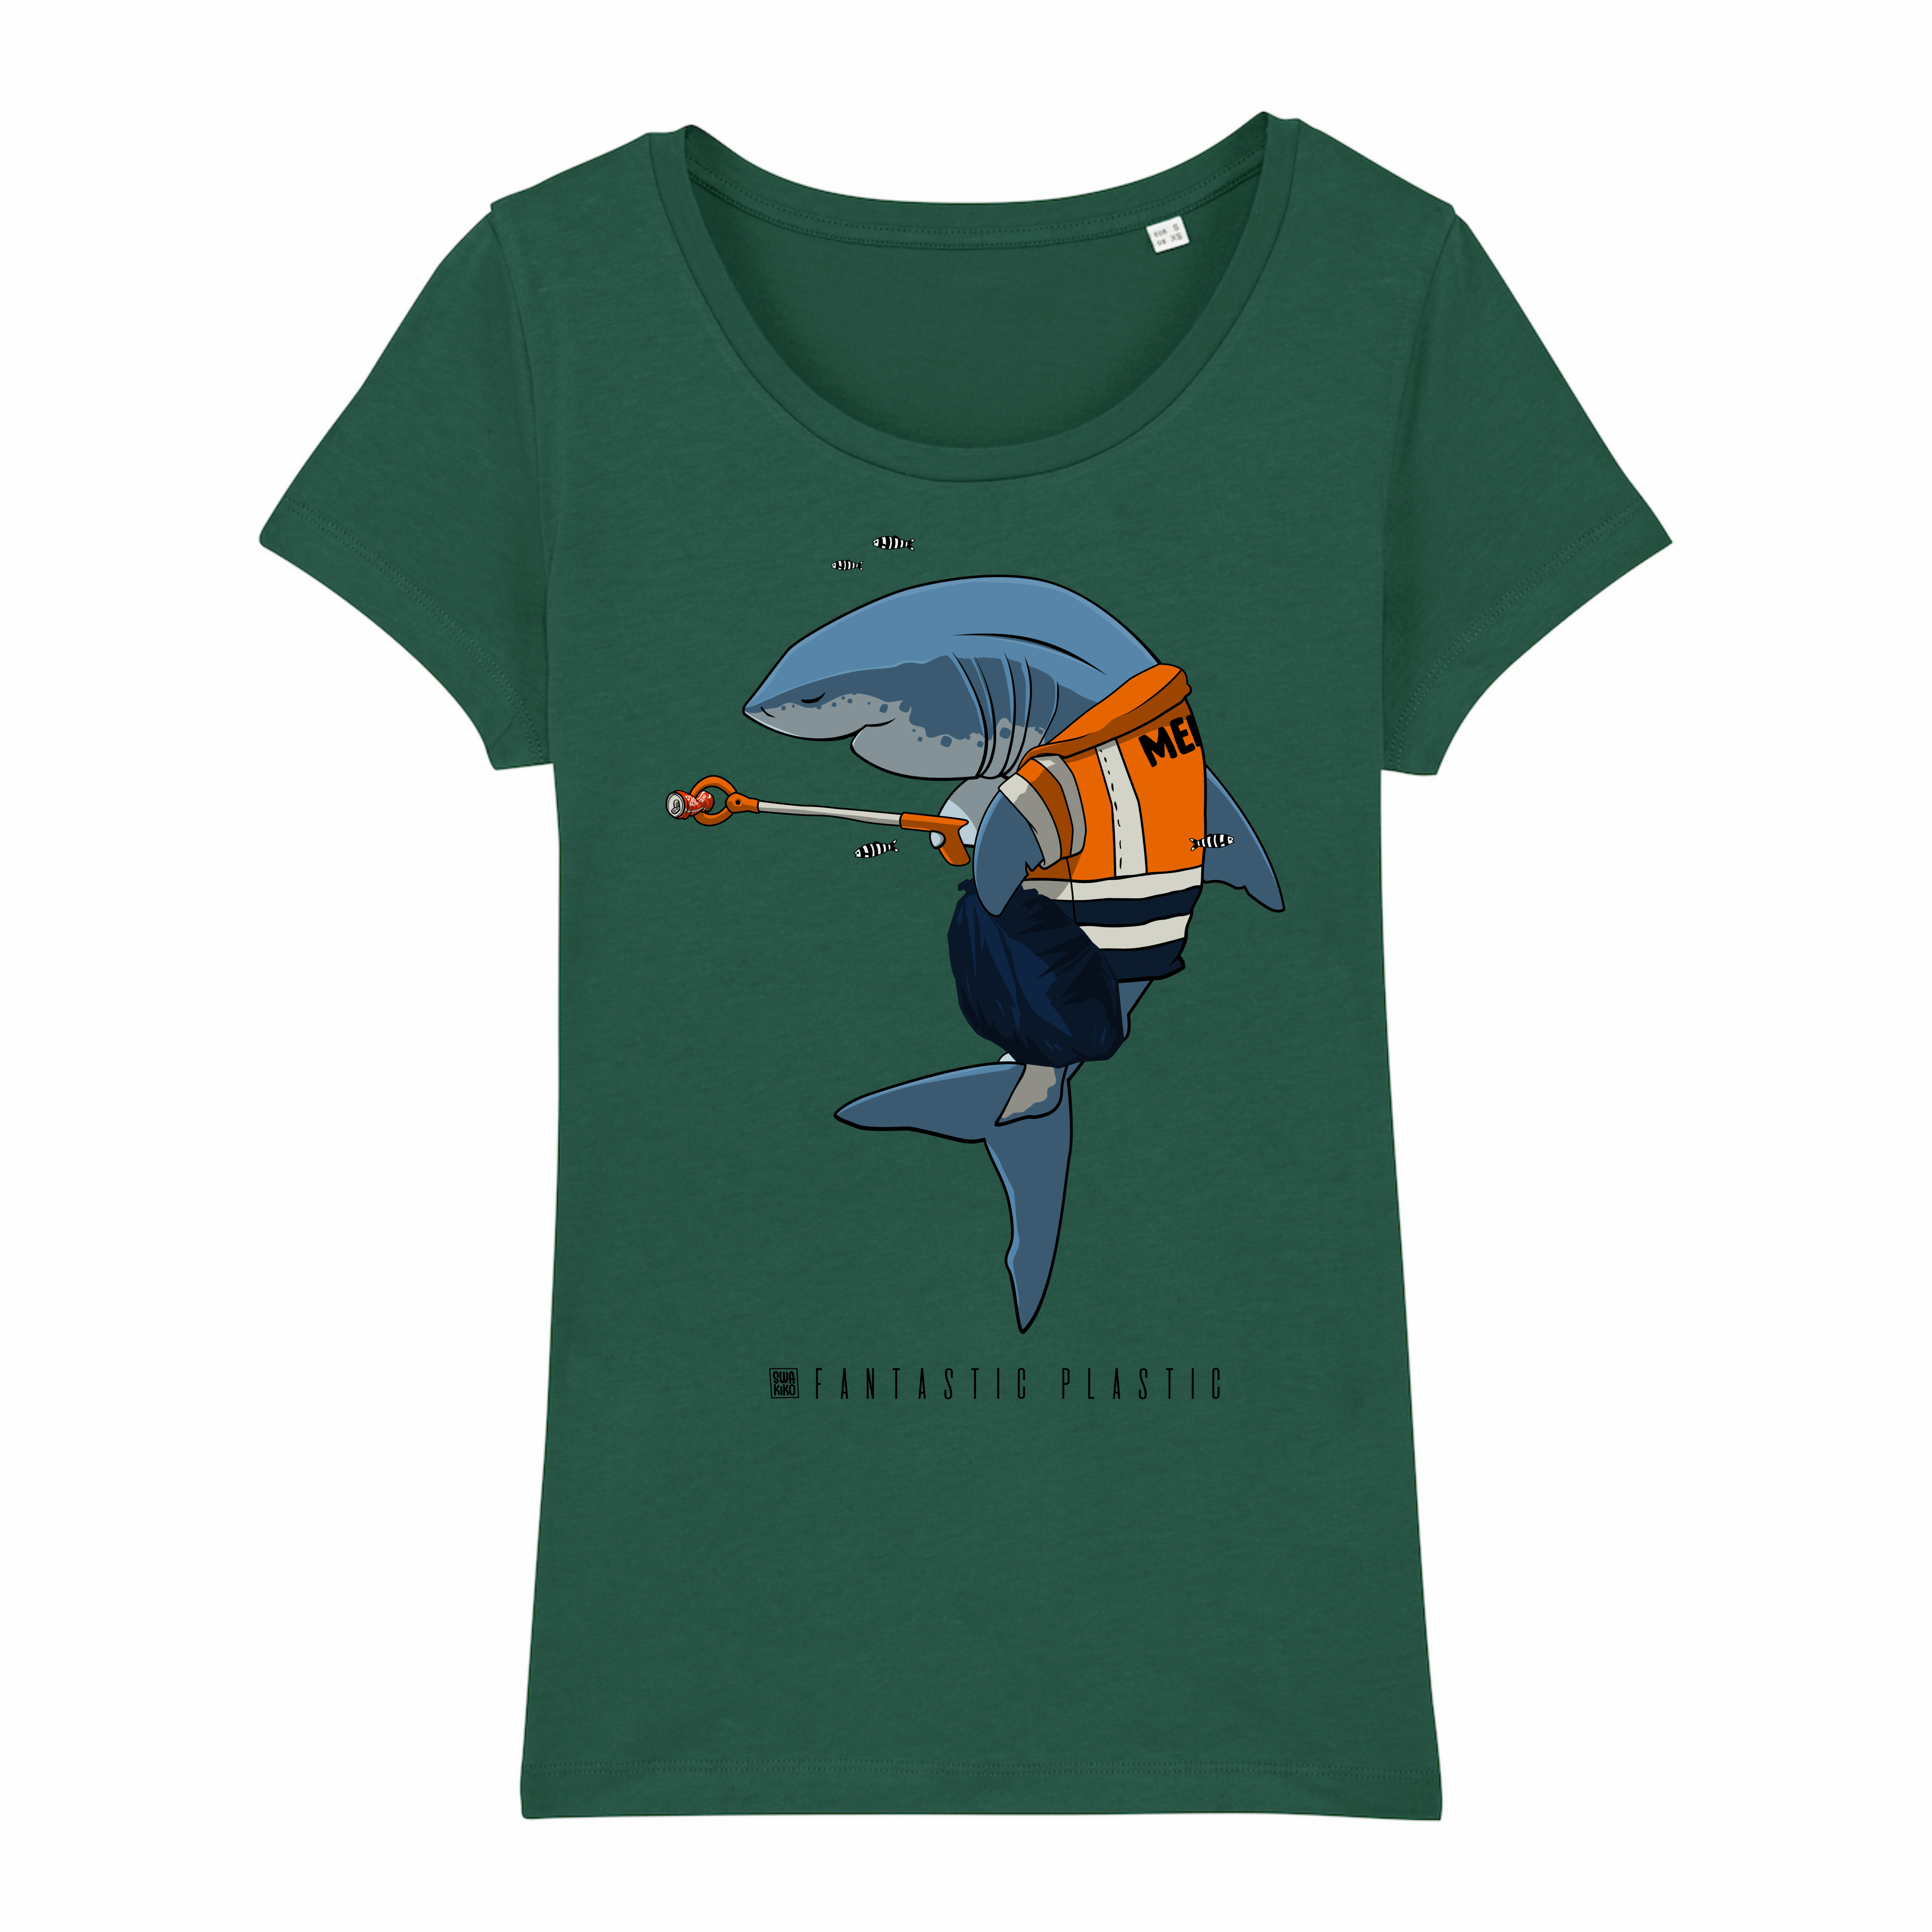 Surf t-shirt women green, Cleaning Shark